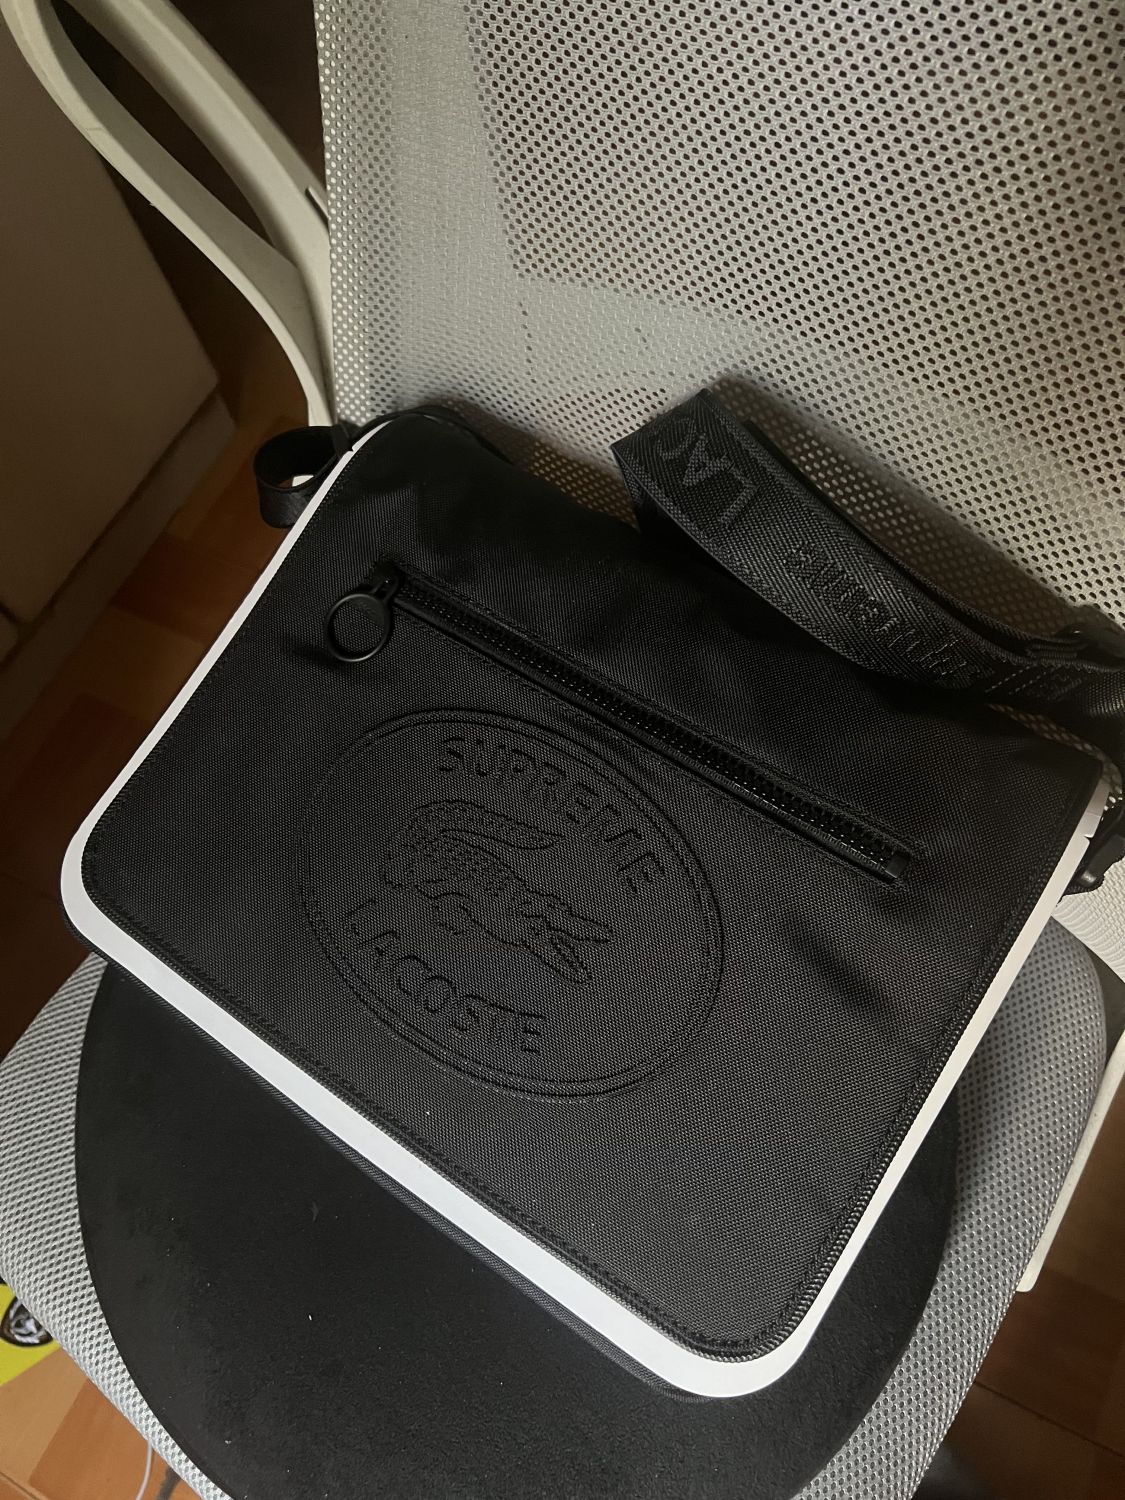 Supreme X Lacoste Messenger Bag | AfterMarket